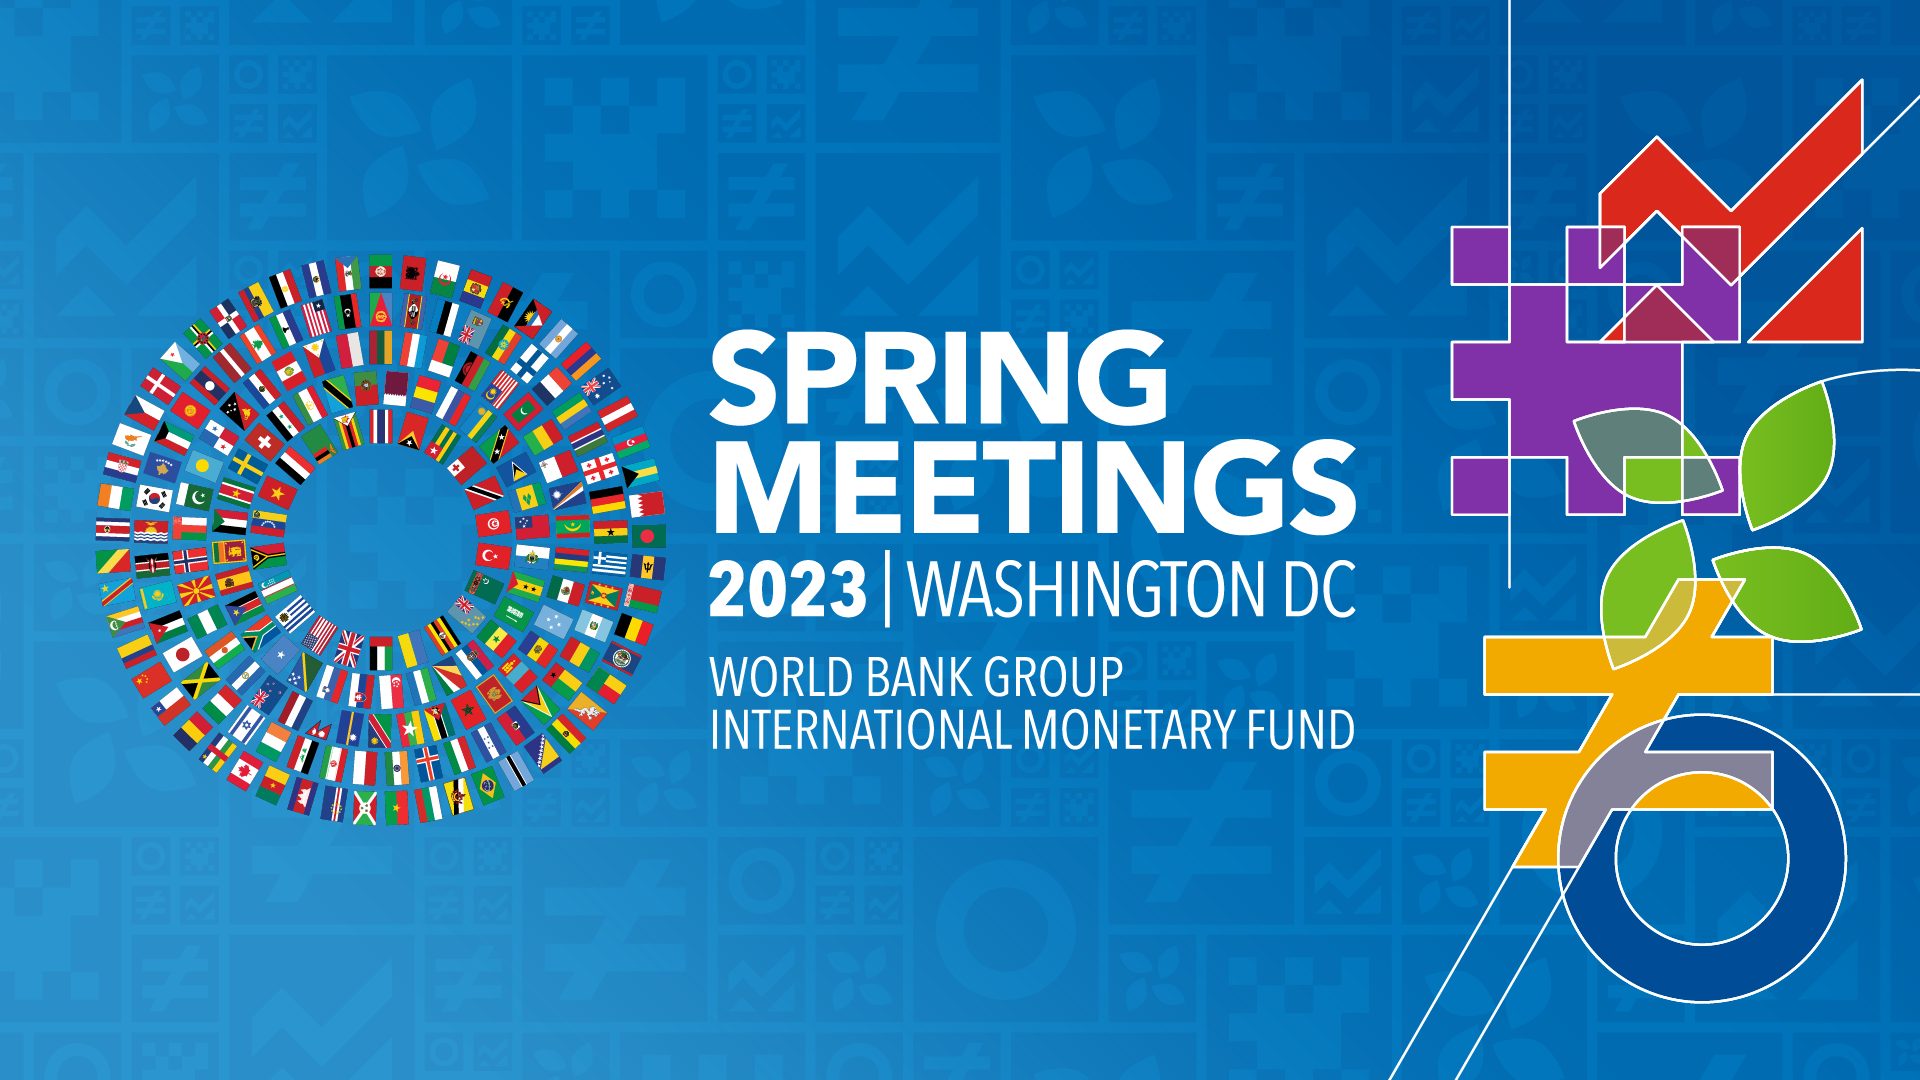 برنامج مشاركة تحالف آراب واتش خلال اجتماعات الربيع لمجموعة البنك الدولي وصندوق النقد الدولي 2023